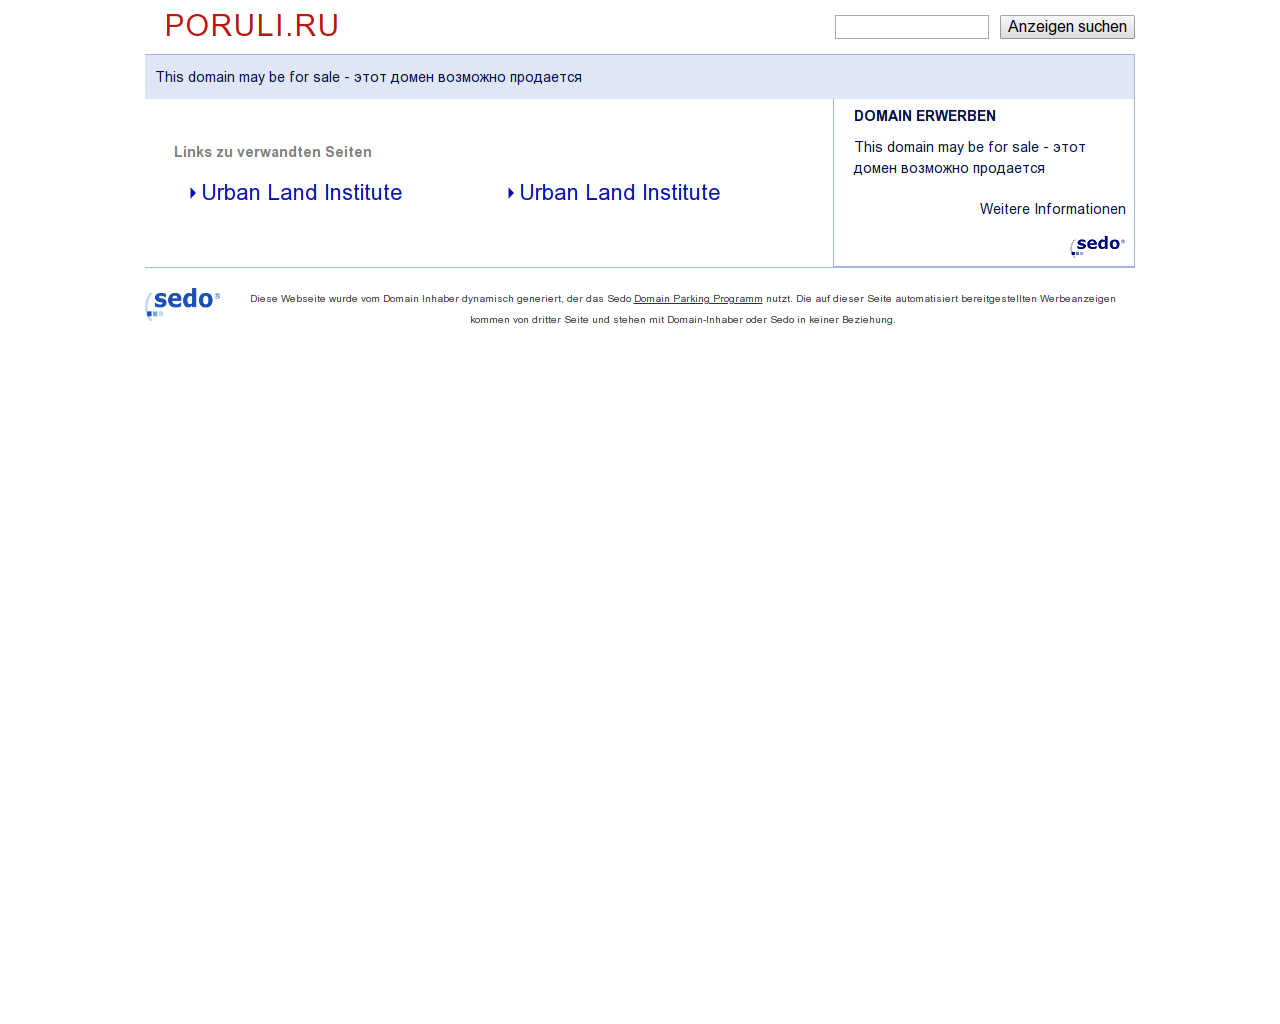 Изображение сайта poruli.ru в разрешении 1280x1024